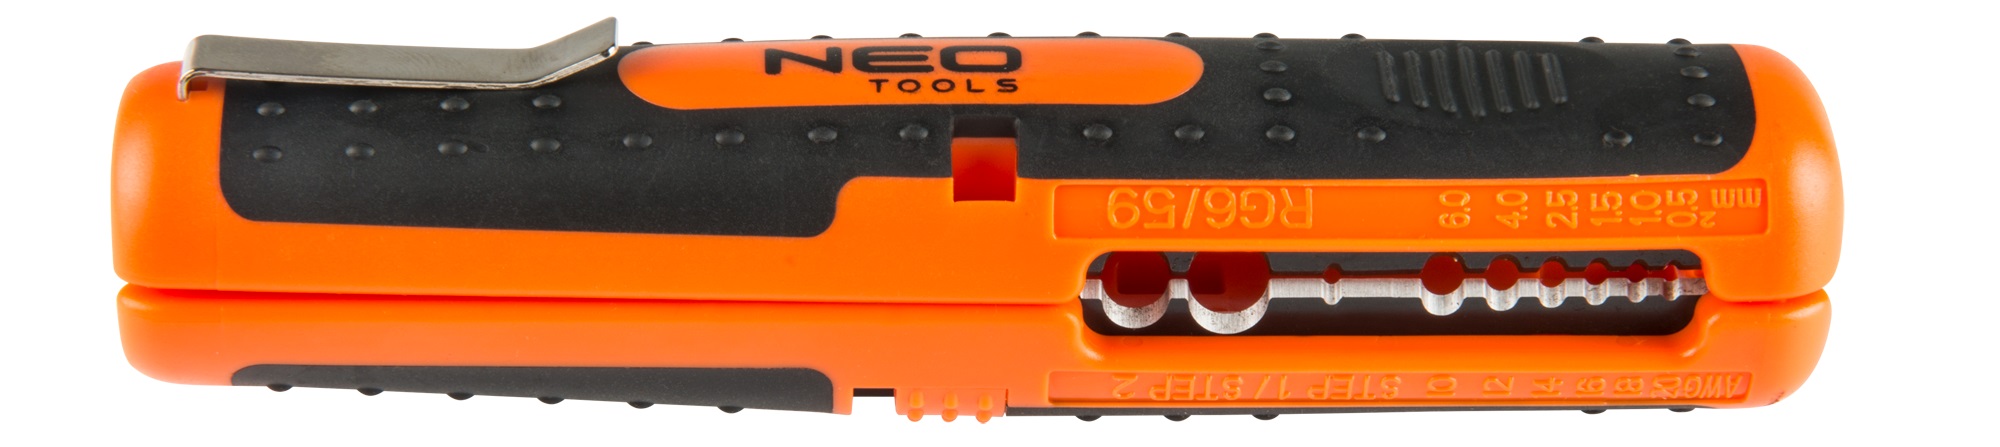 Neo Tools 01-524